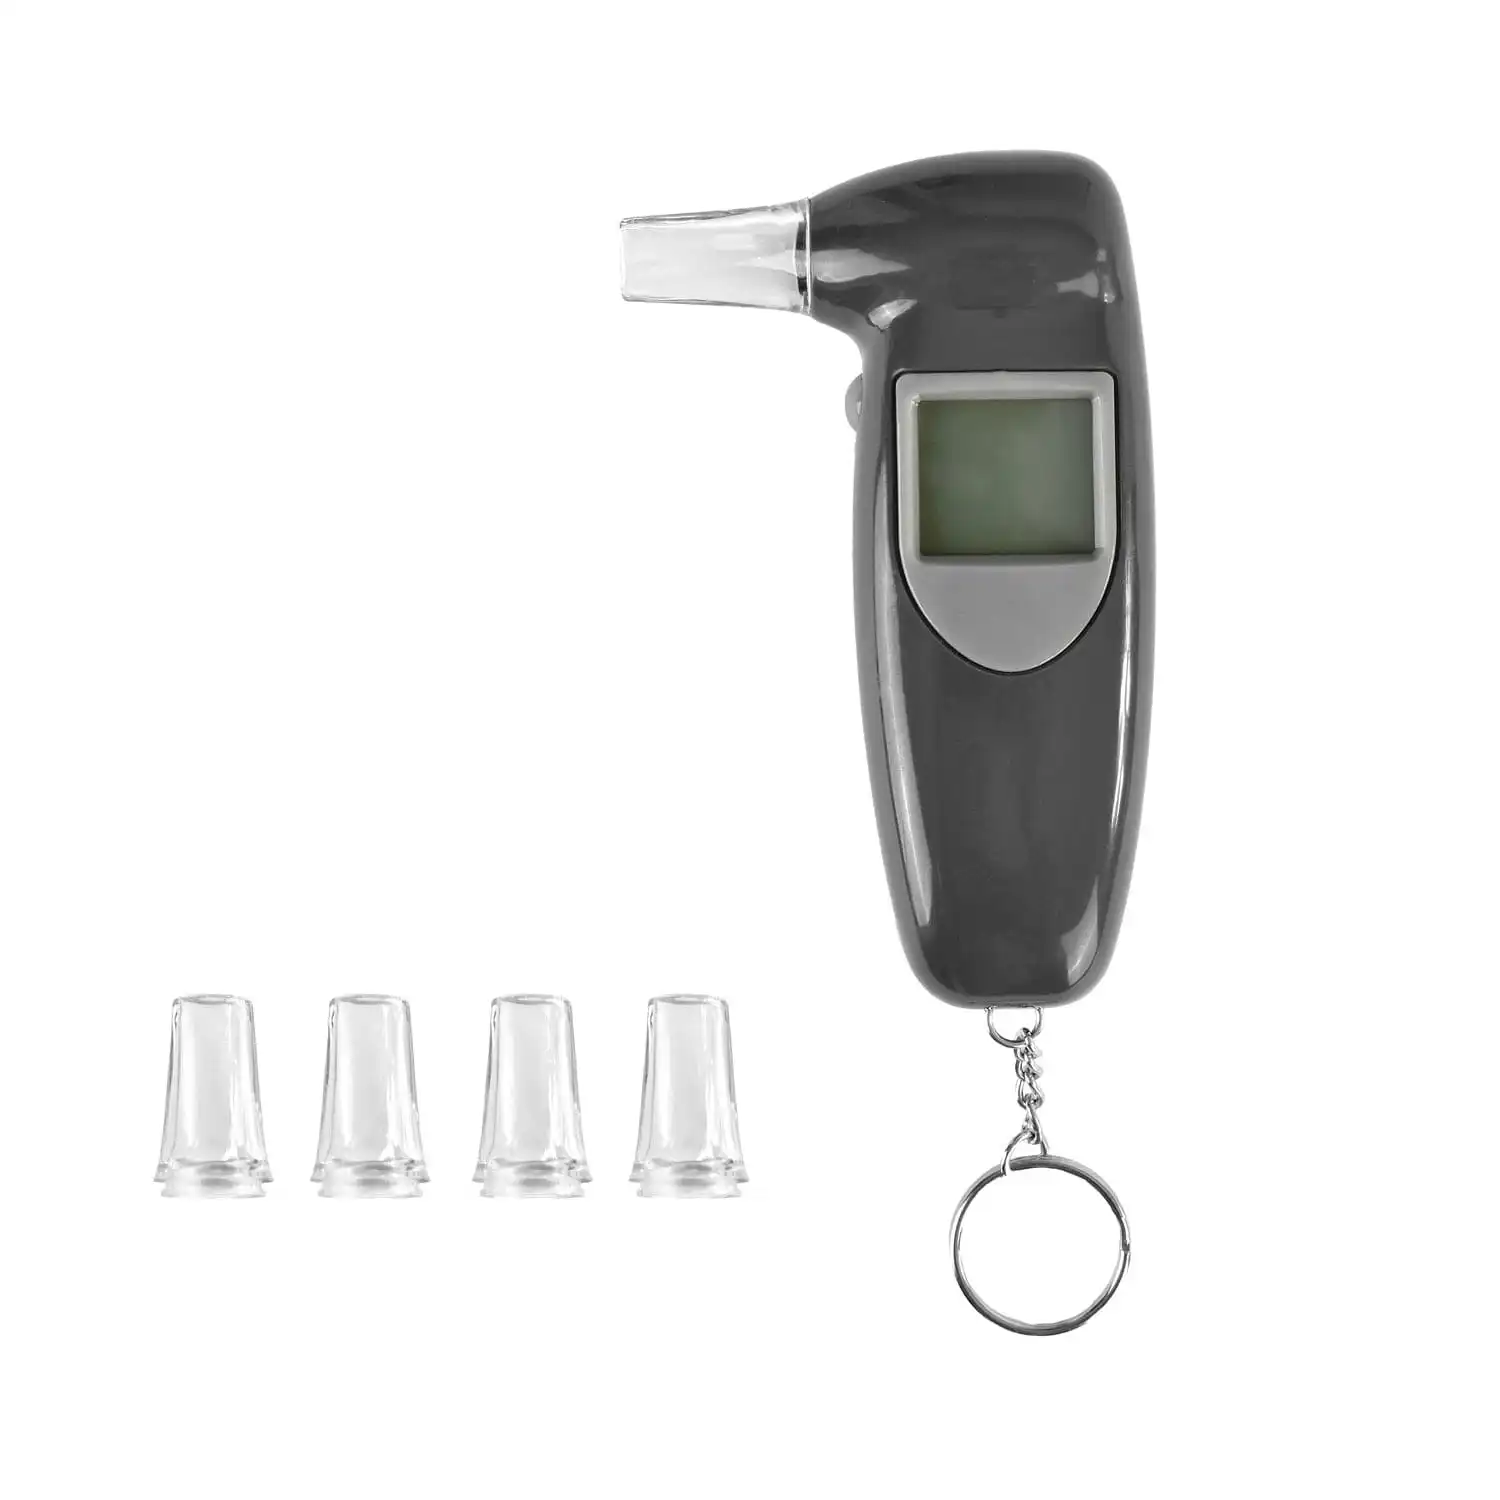 Breathalyzer Digital LCD Alcohol Breath Tester